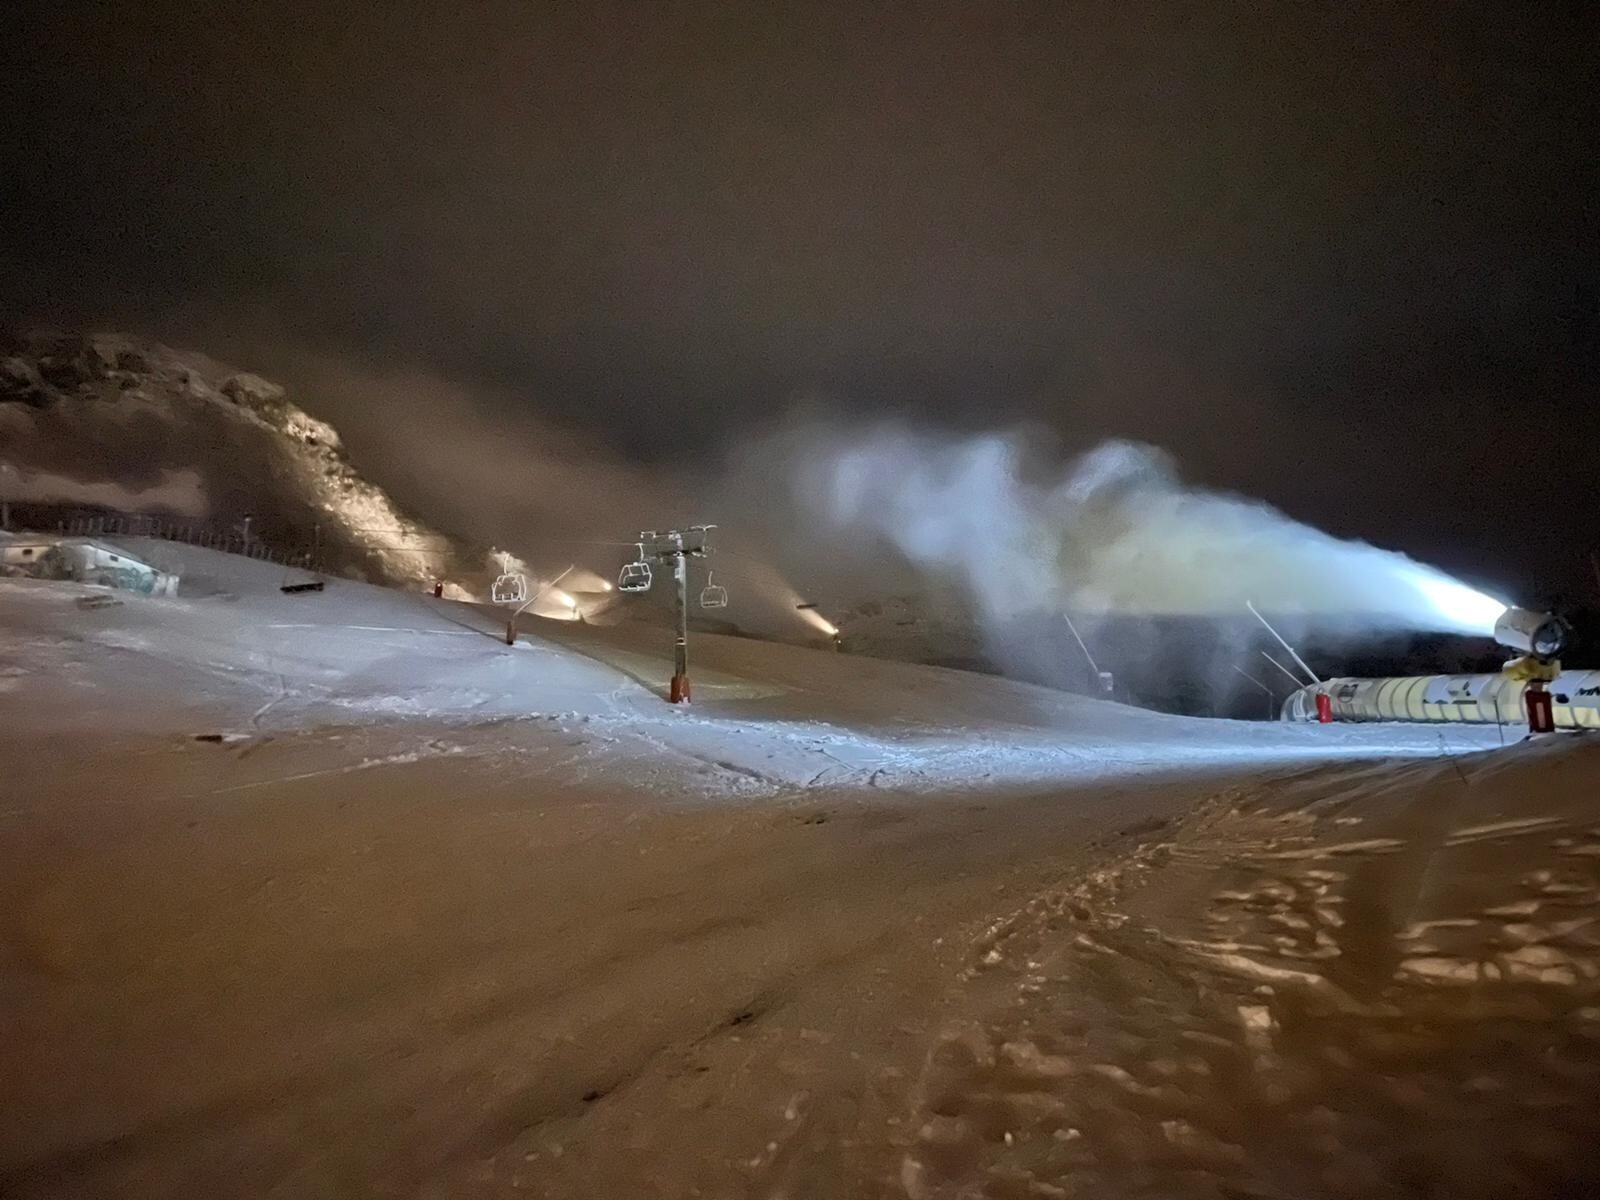 Cañon de nieve artificial en Valgrande Pajares